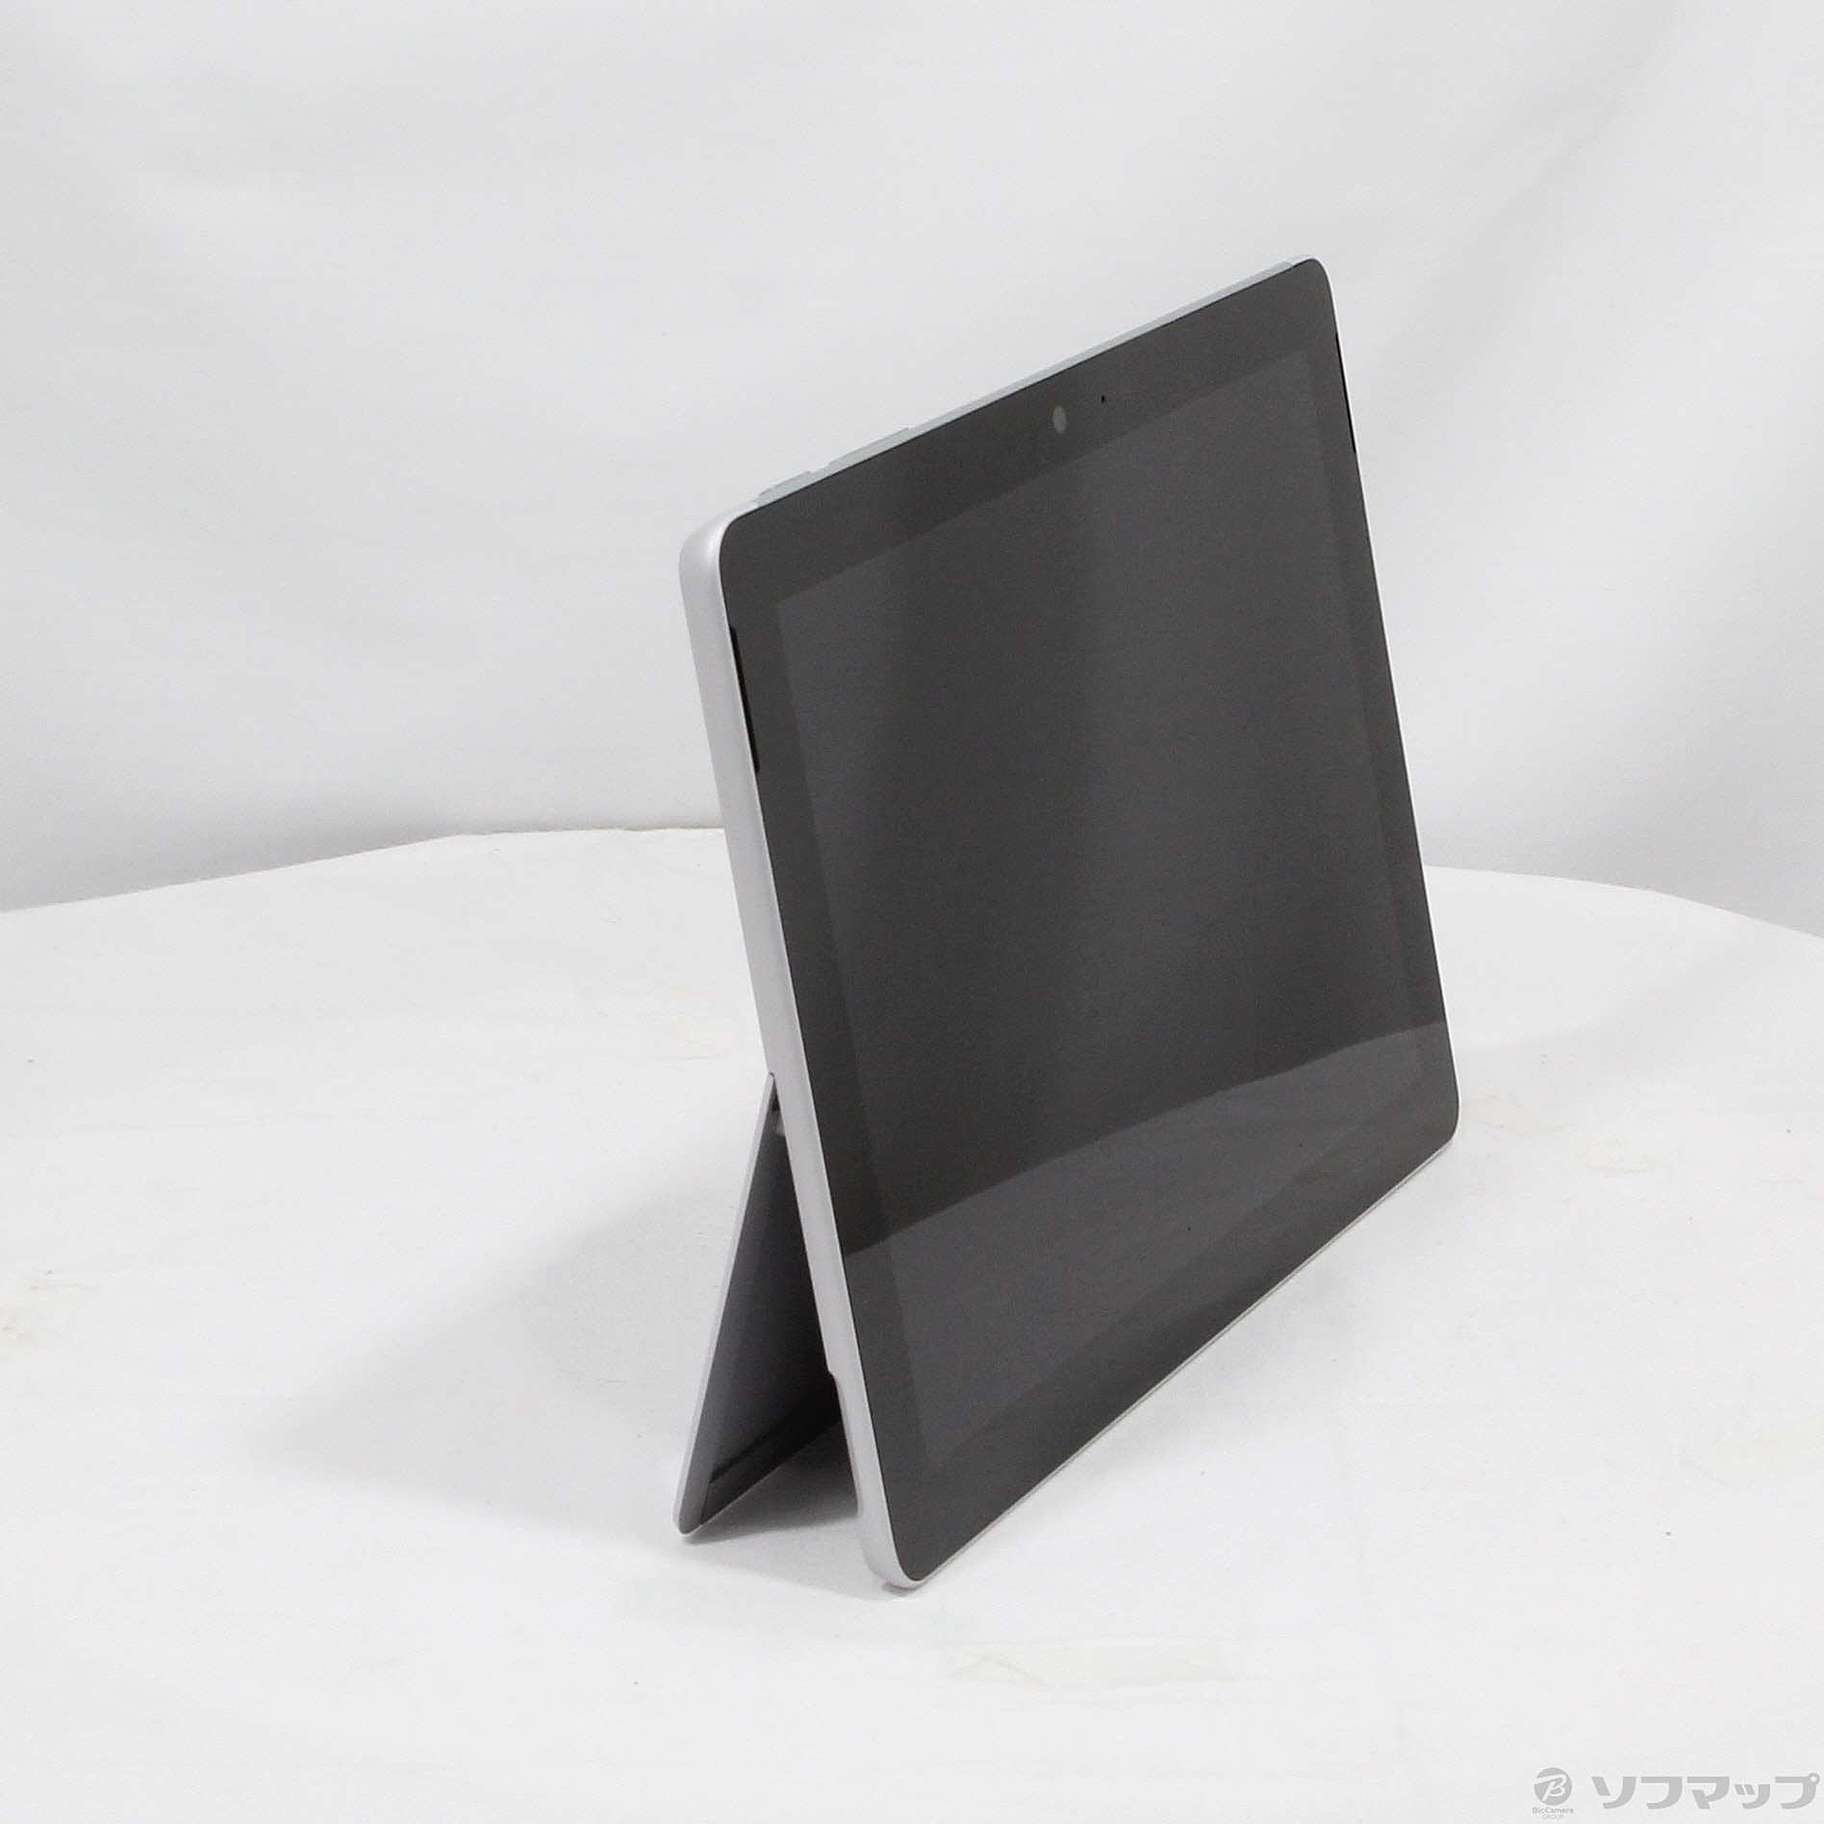 【新品】Surface Go MHN-00017 officeなしUSB-C×1カードスロット